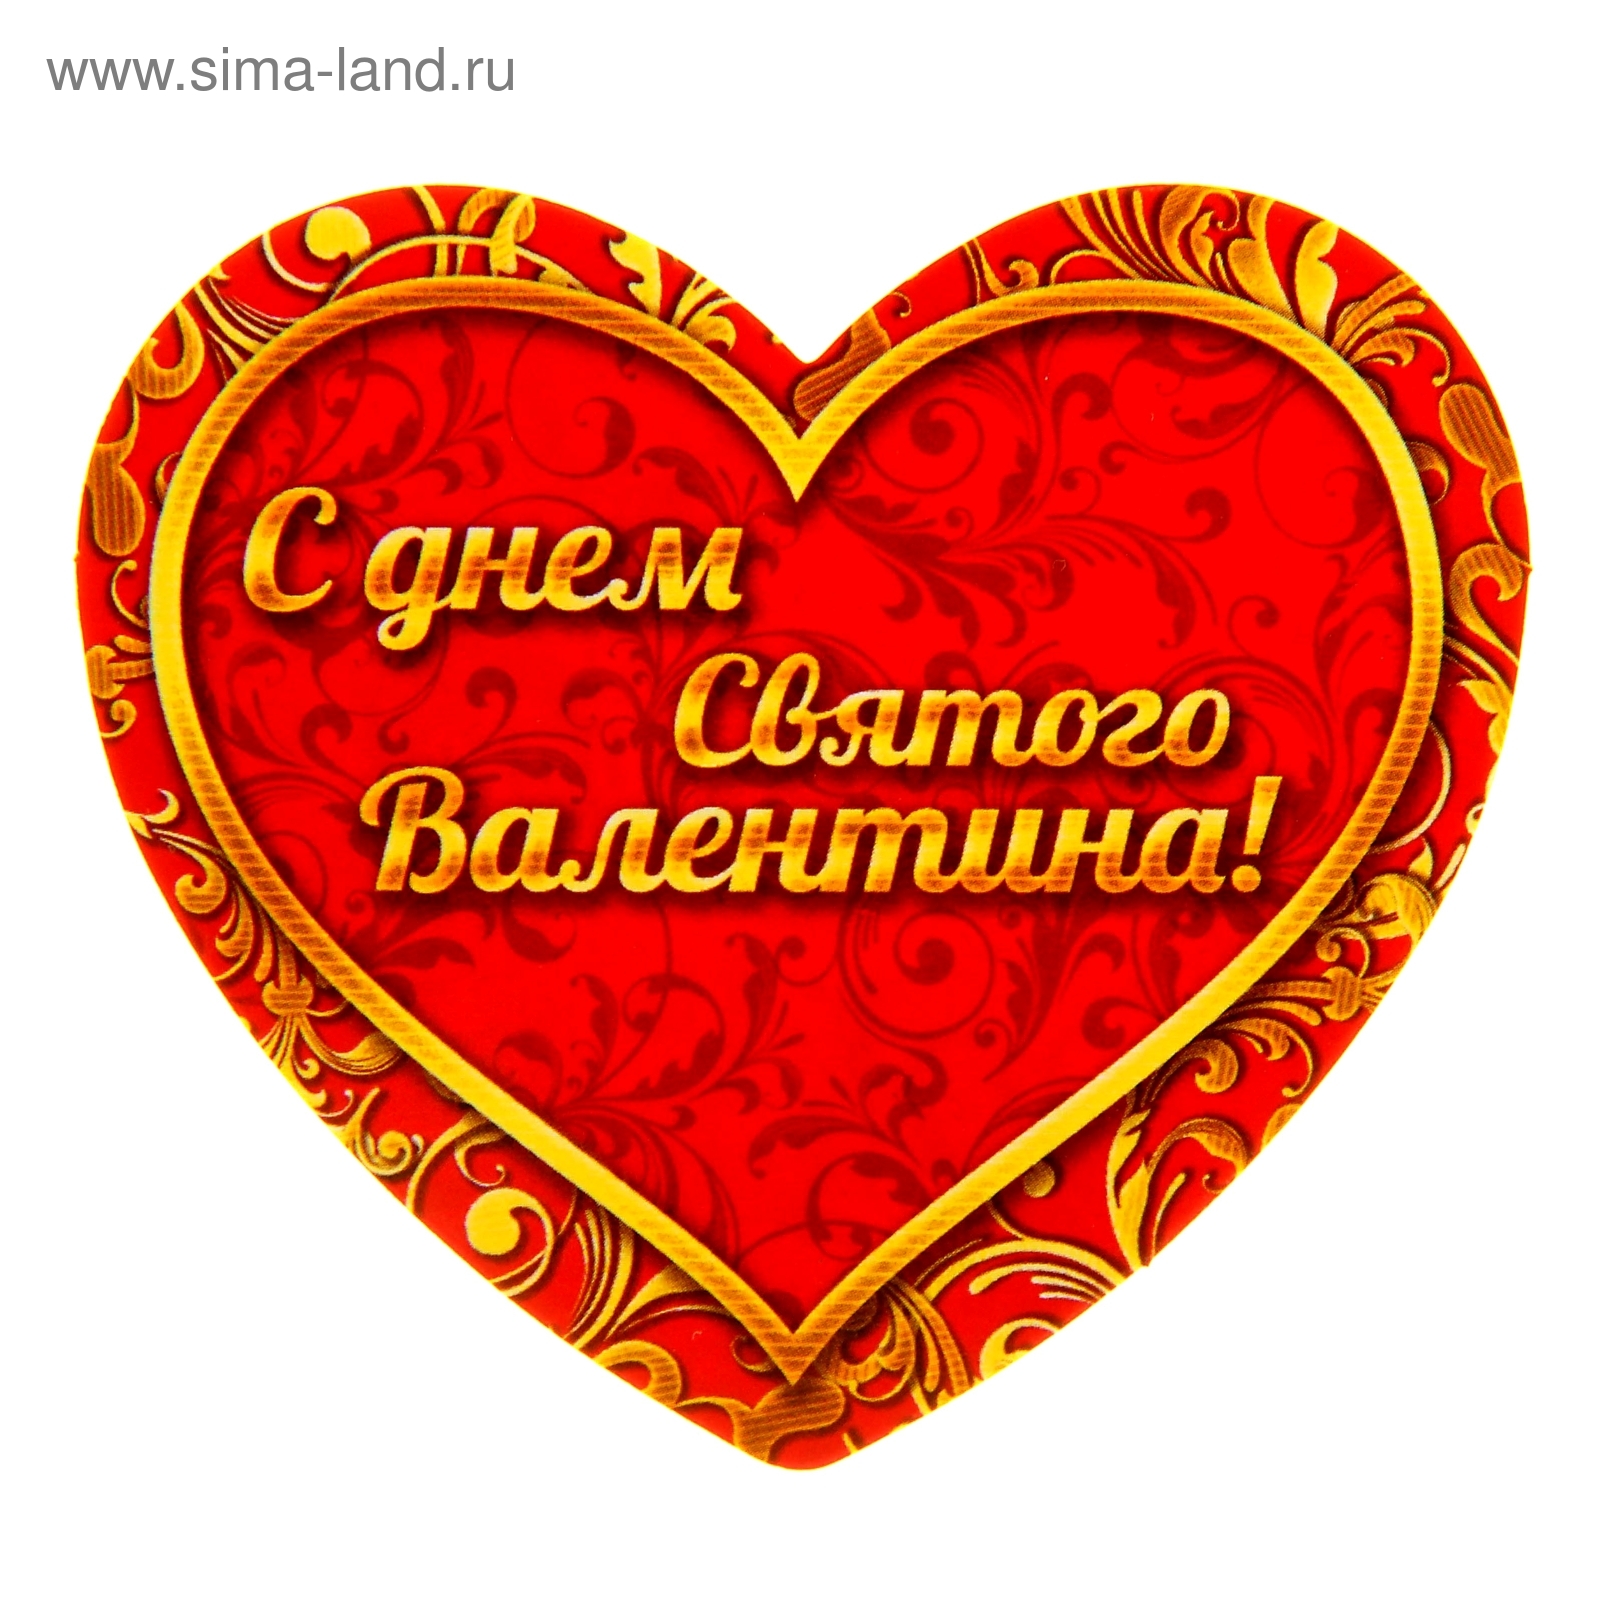 Поздравления с Днем святого Валентина 14 февраля в открытках, стихах и и прозе